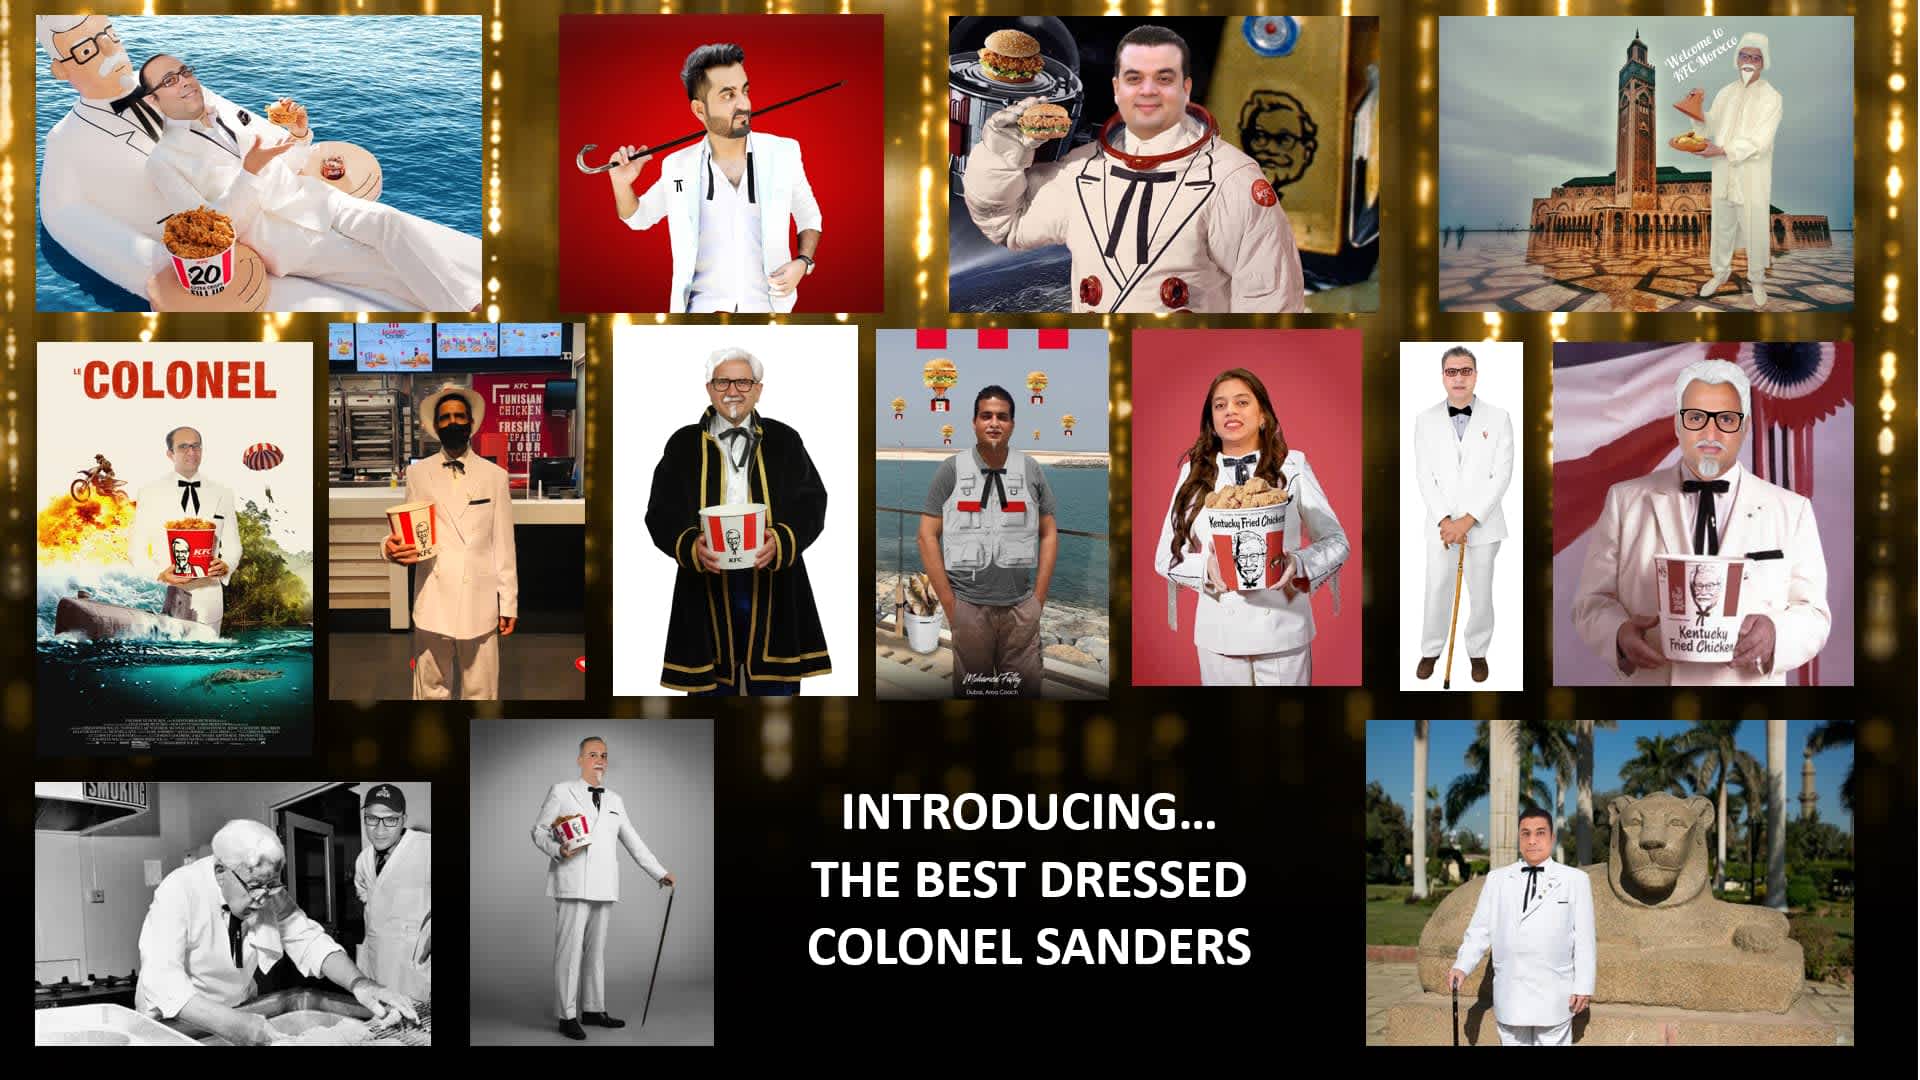 125 best dressed colonel participants